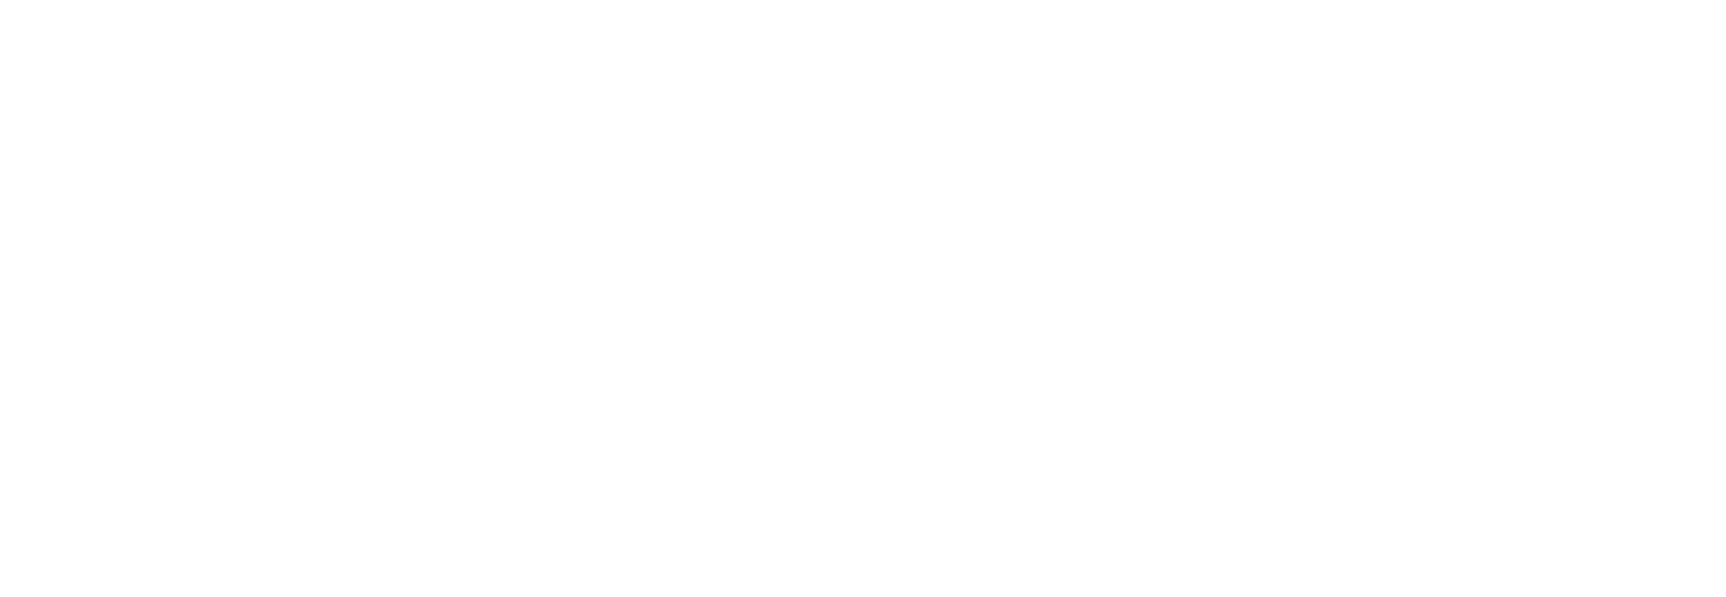 Master Chau Do's official website